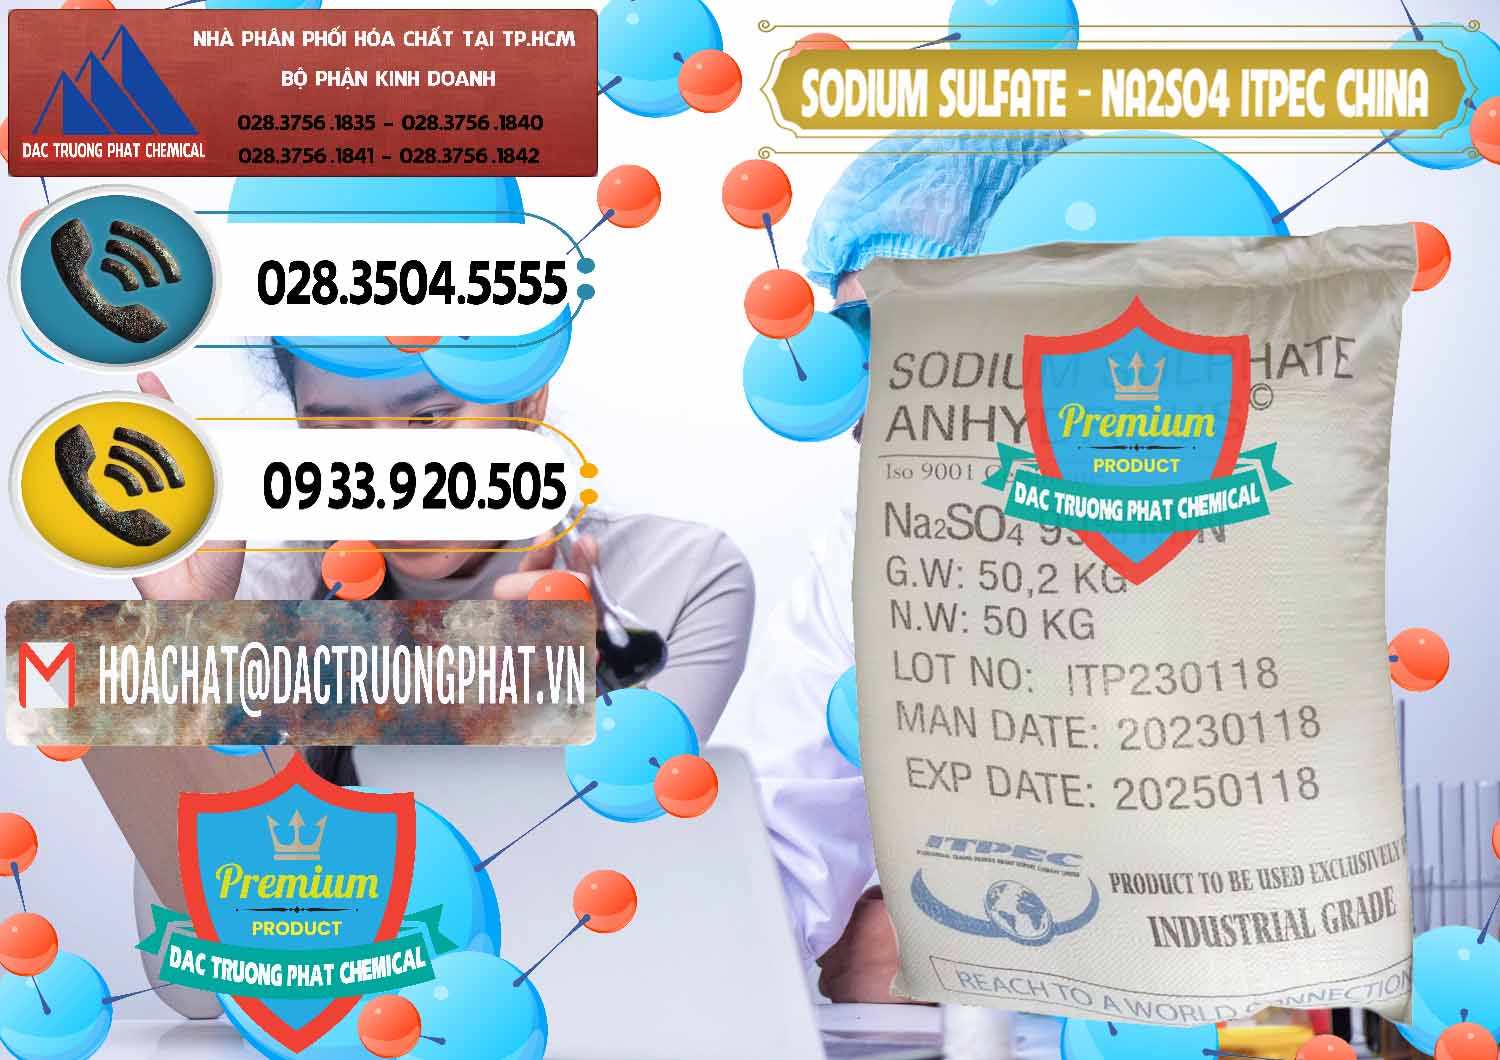 Nơi chuyên bán và phân phối Sodium Sulphate - Muối Sunfat Na2SO4 ITPEC Trung Quốc China - 0340 - Chuyên bán & phân phối hóa chất tại TP.HCM - hoachatdetnhuom.vn